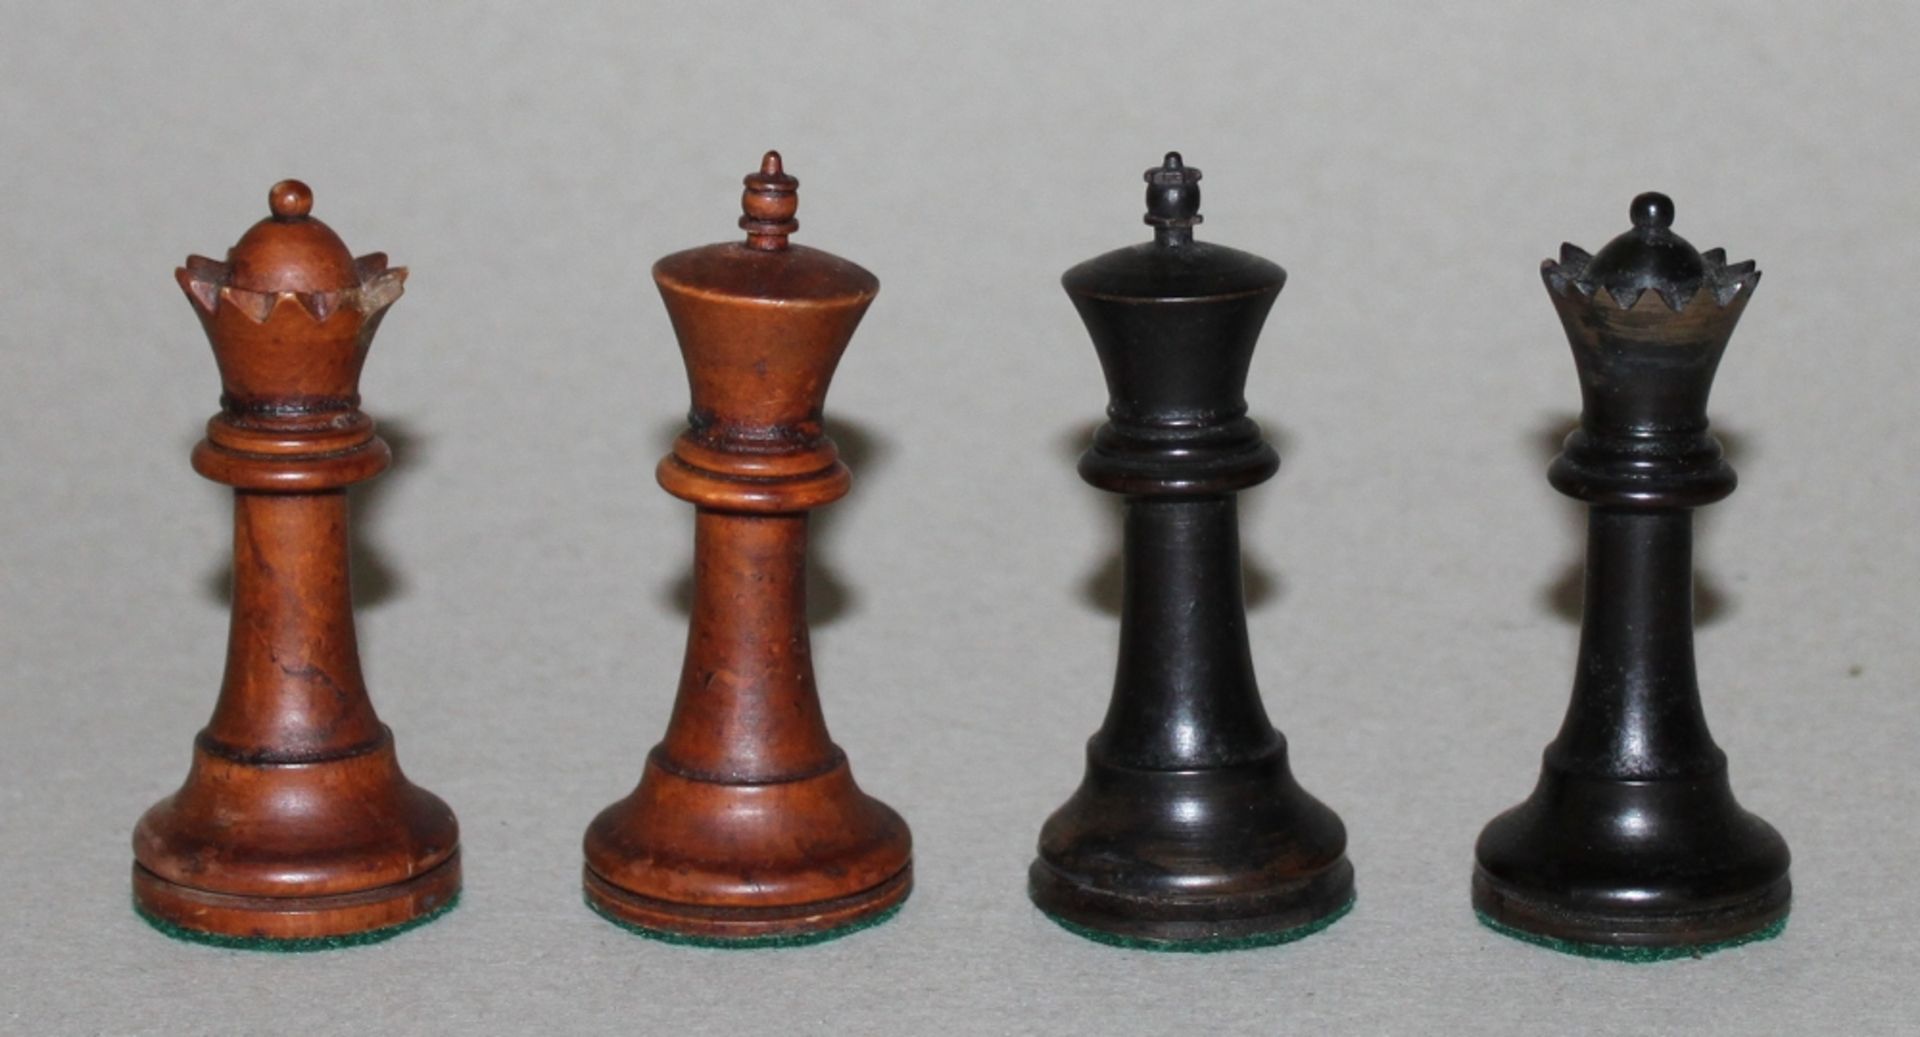 Europa. Irland. Schachfiguren aus Erdbeerbaumholz (?) aus Cork in Irland(?) in einer Mahagoni -